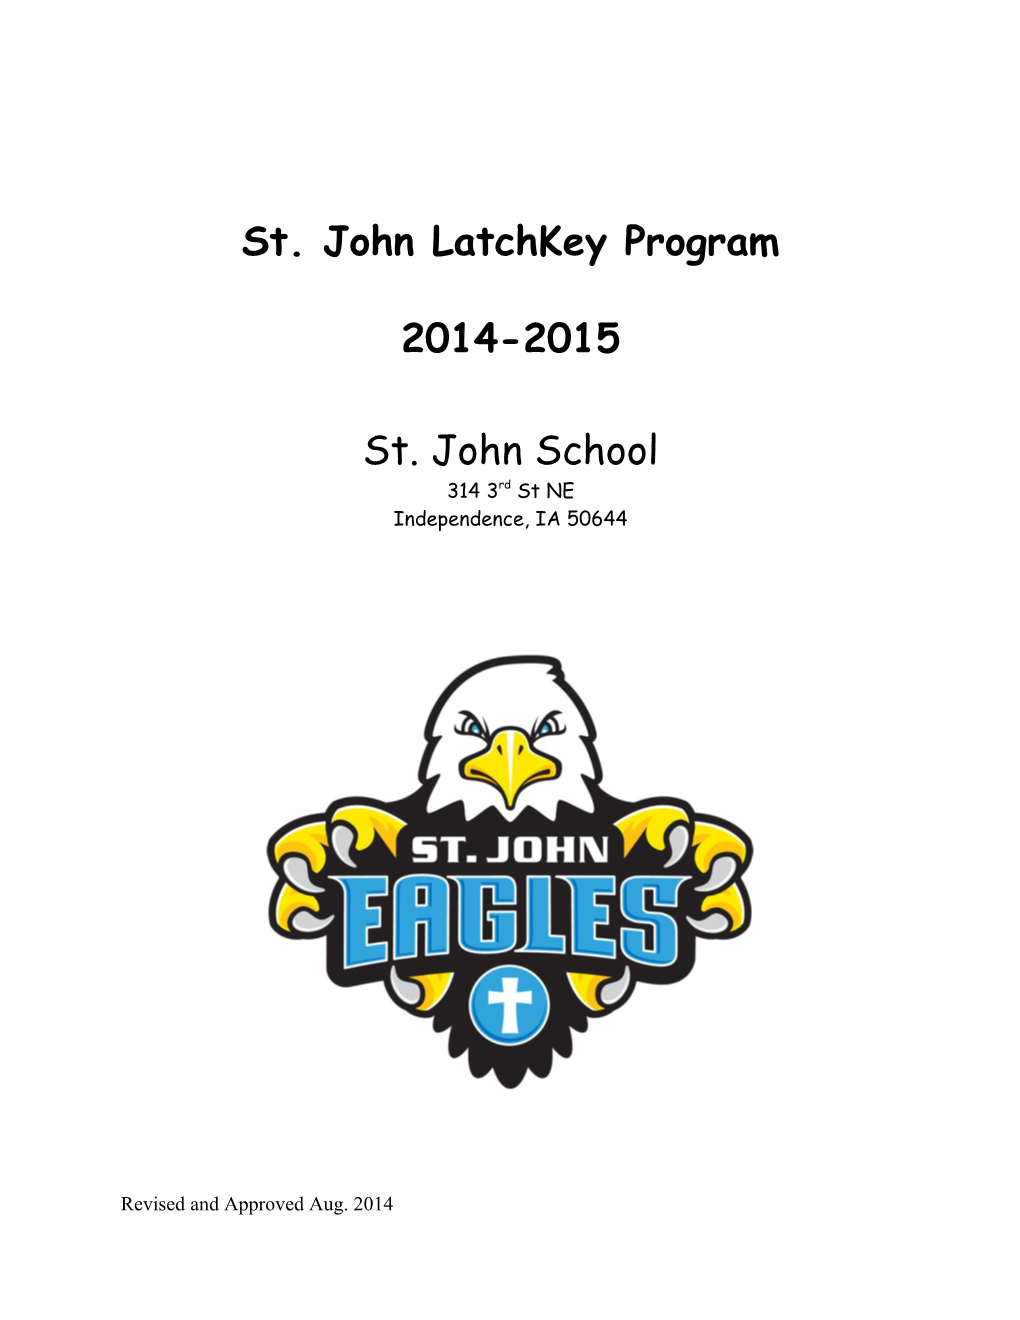 St. John Latchkey Program